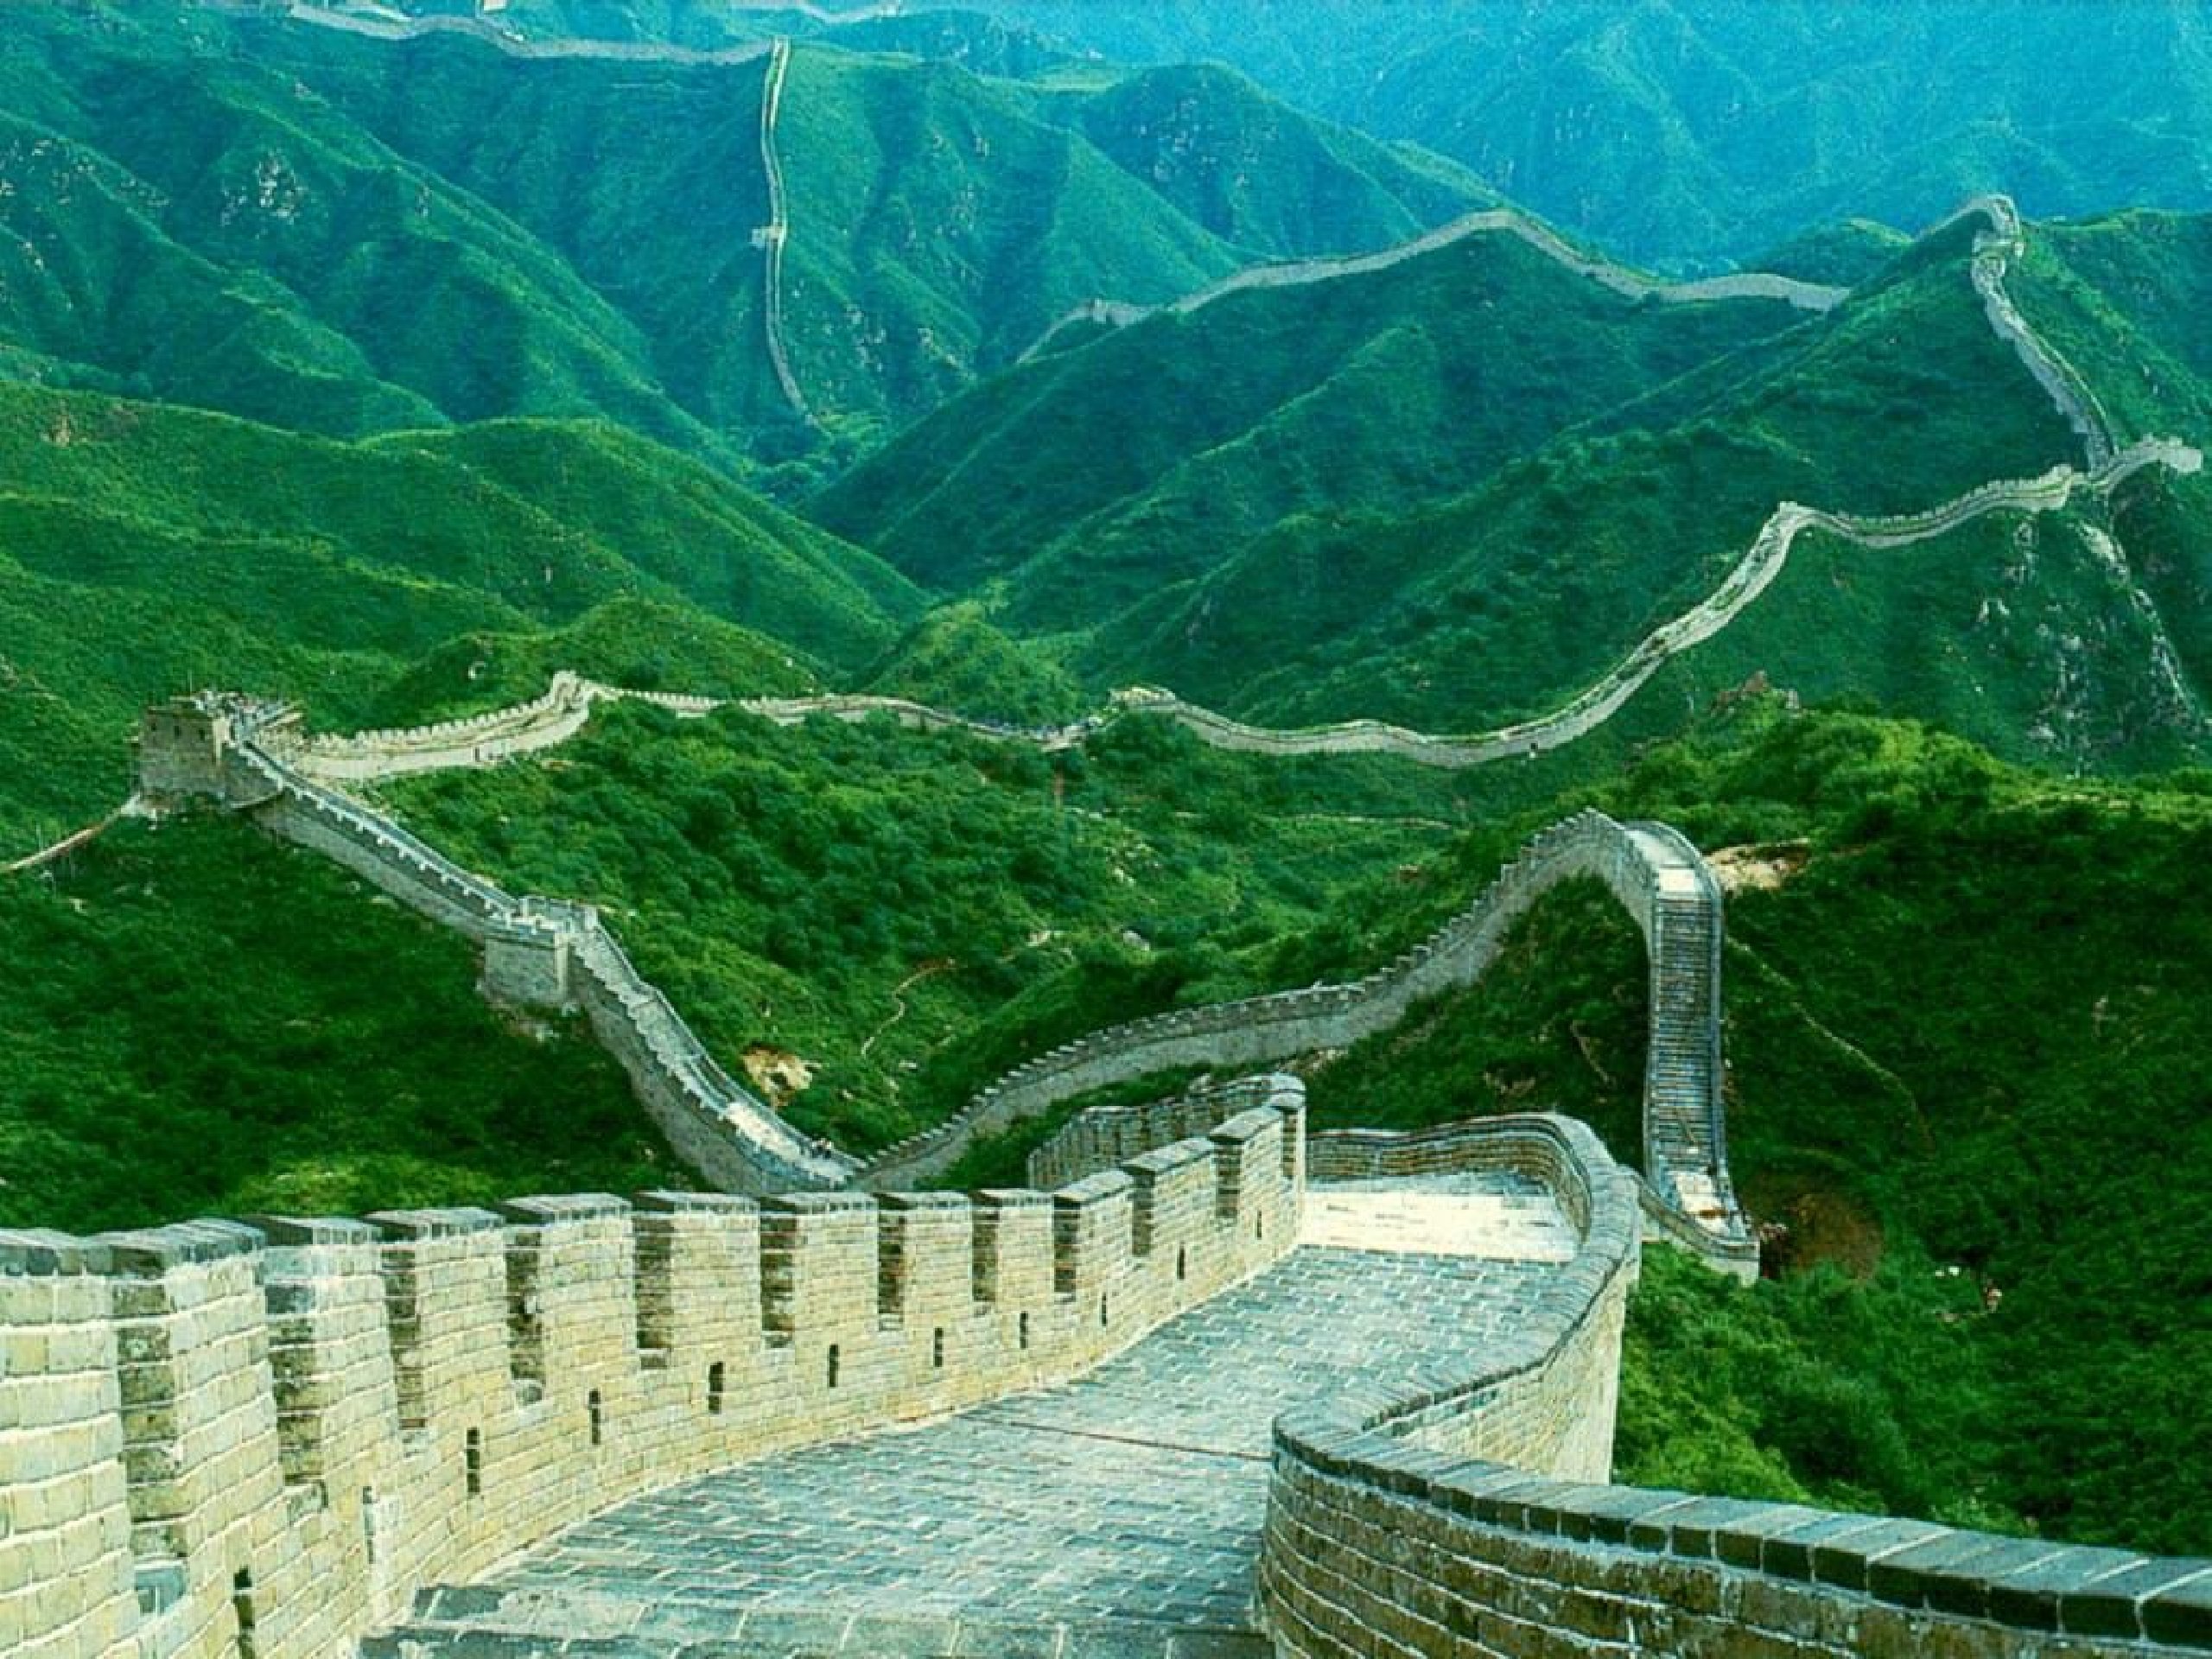 Great wall of China